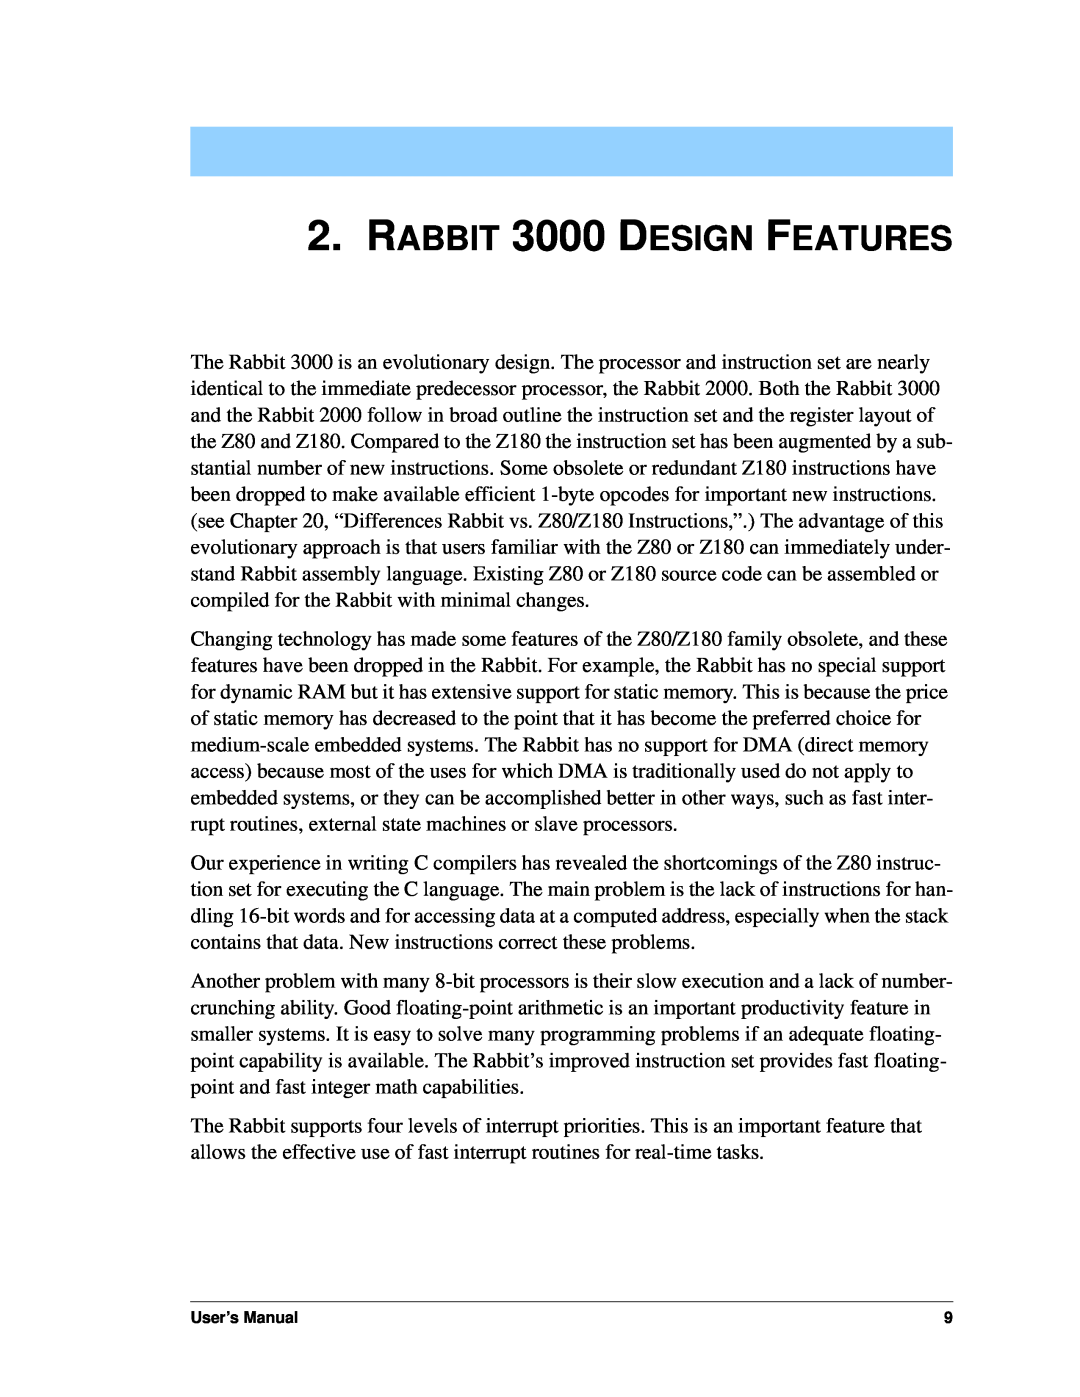 Jameco Electronics 2000 manual RABBIT 3000 DESIGN FEATURES, User’s Manual 